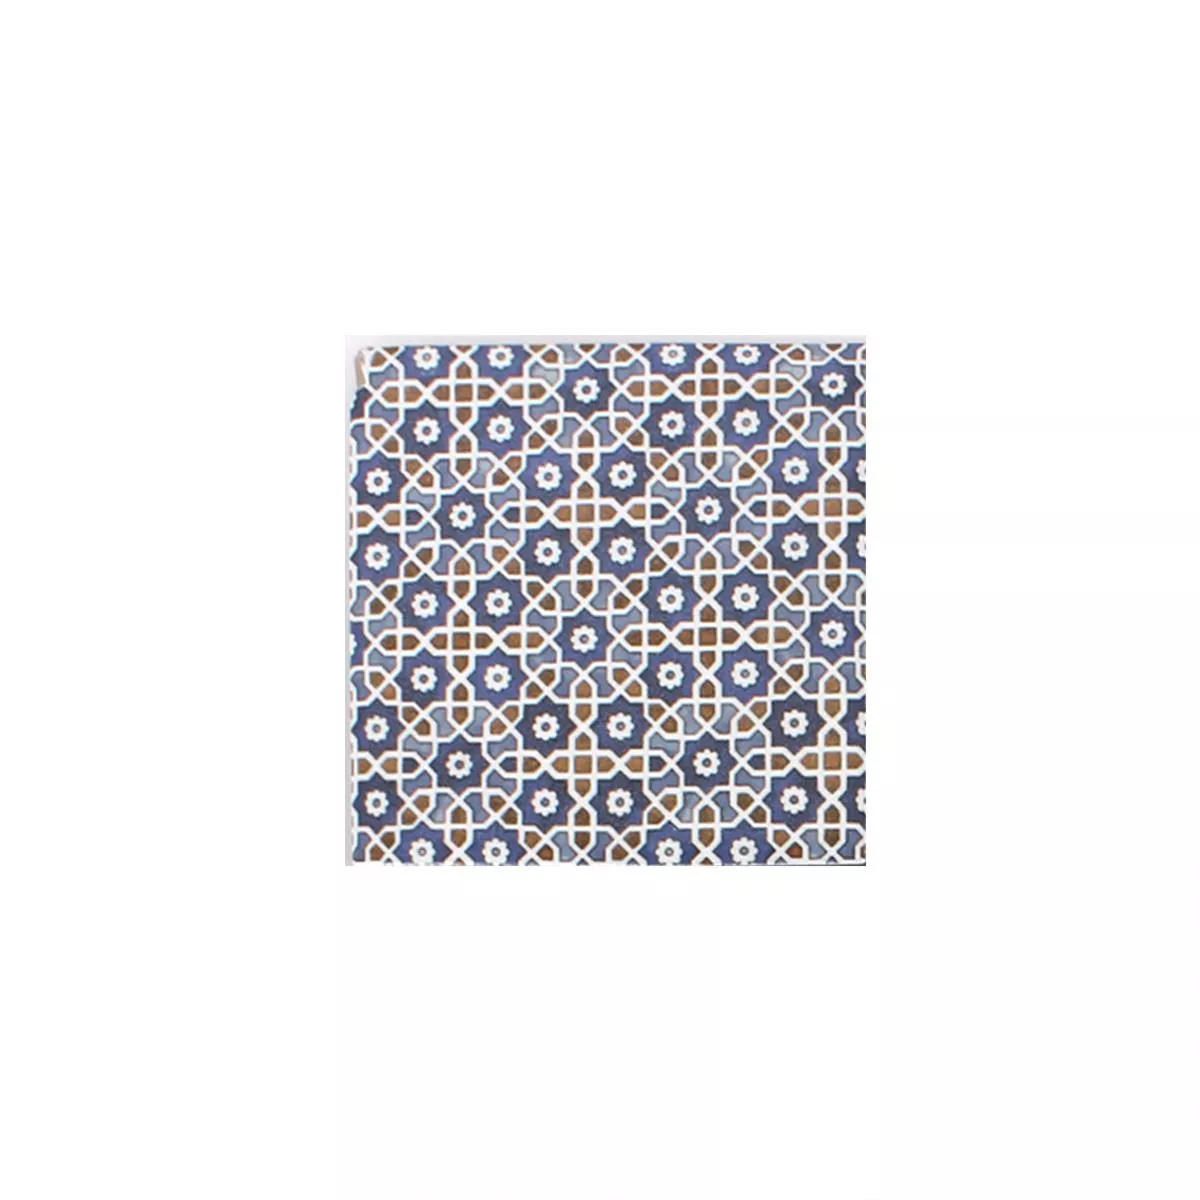 Muestra Cerámica Azulejos De Mosaico Daymion Aspecto Retro Azul Marrón 